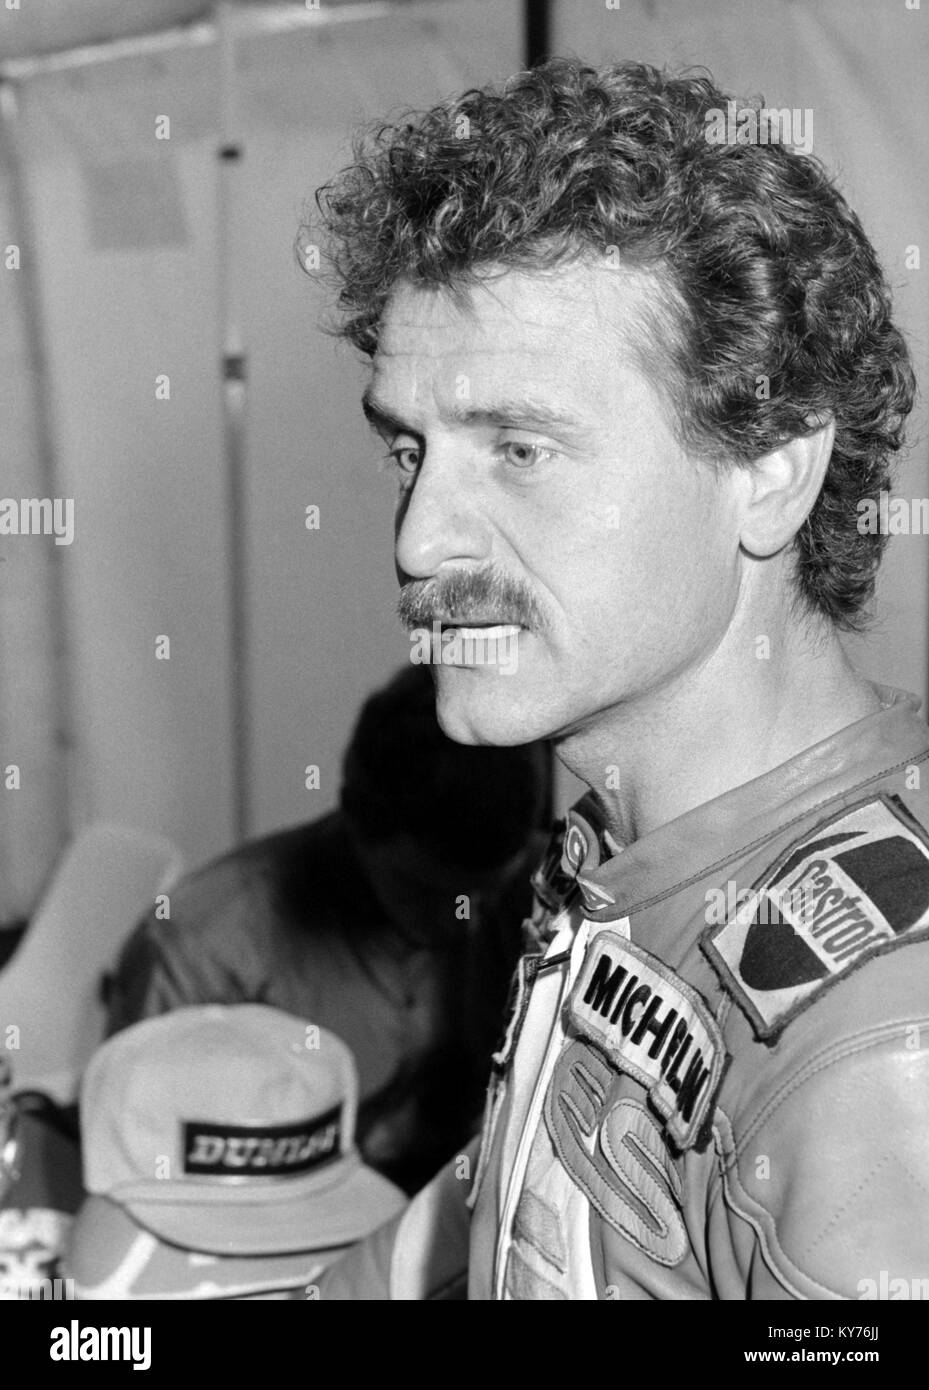 Manfred Herweh at the 1985 British motorcycle Grand Prix Moto GP. Stock Photo